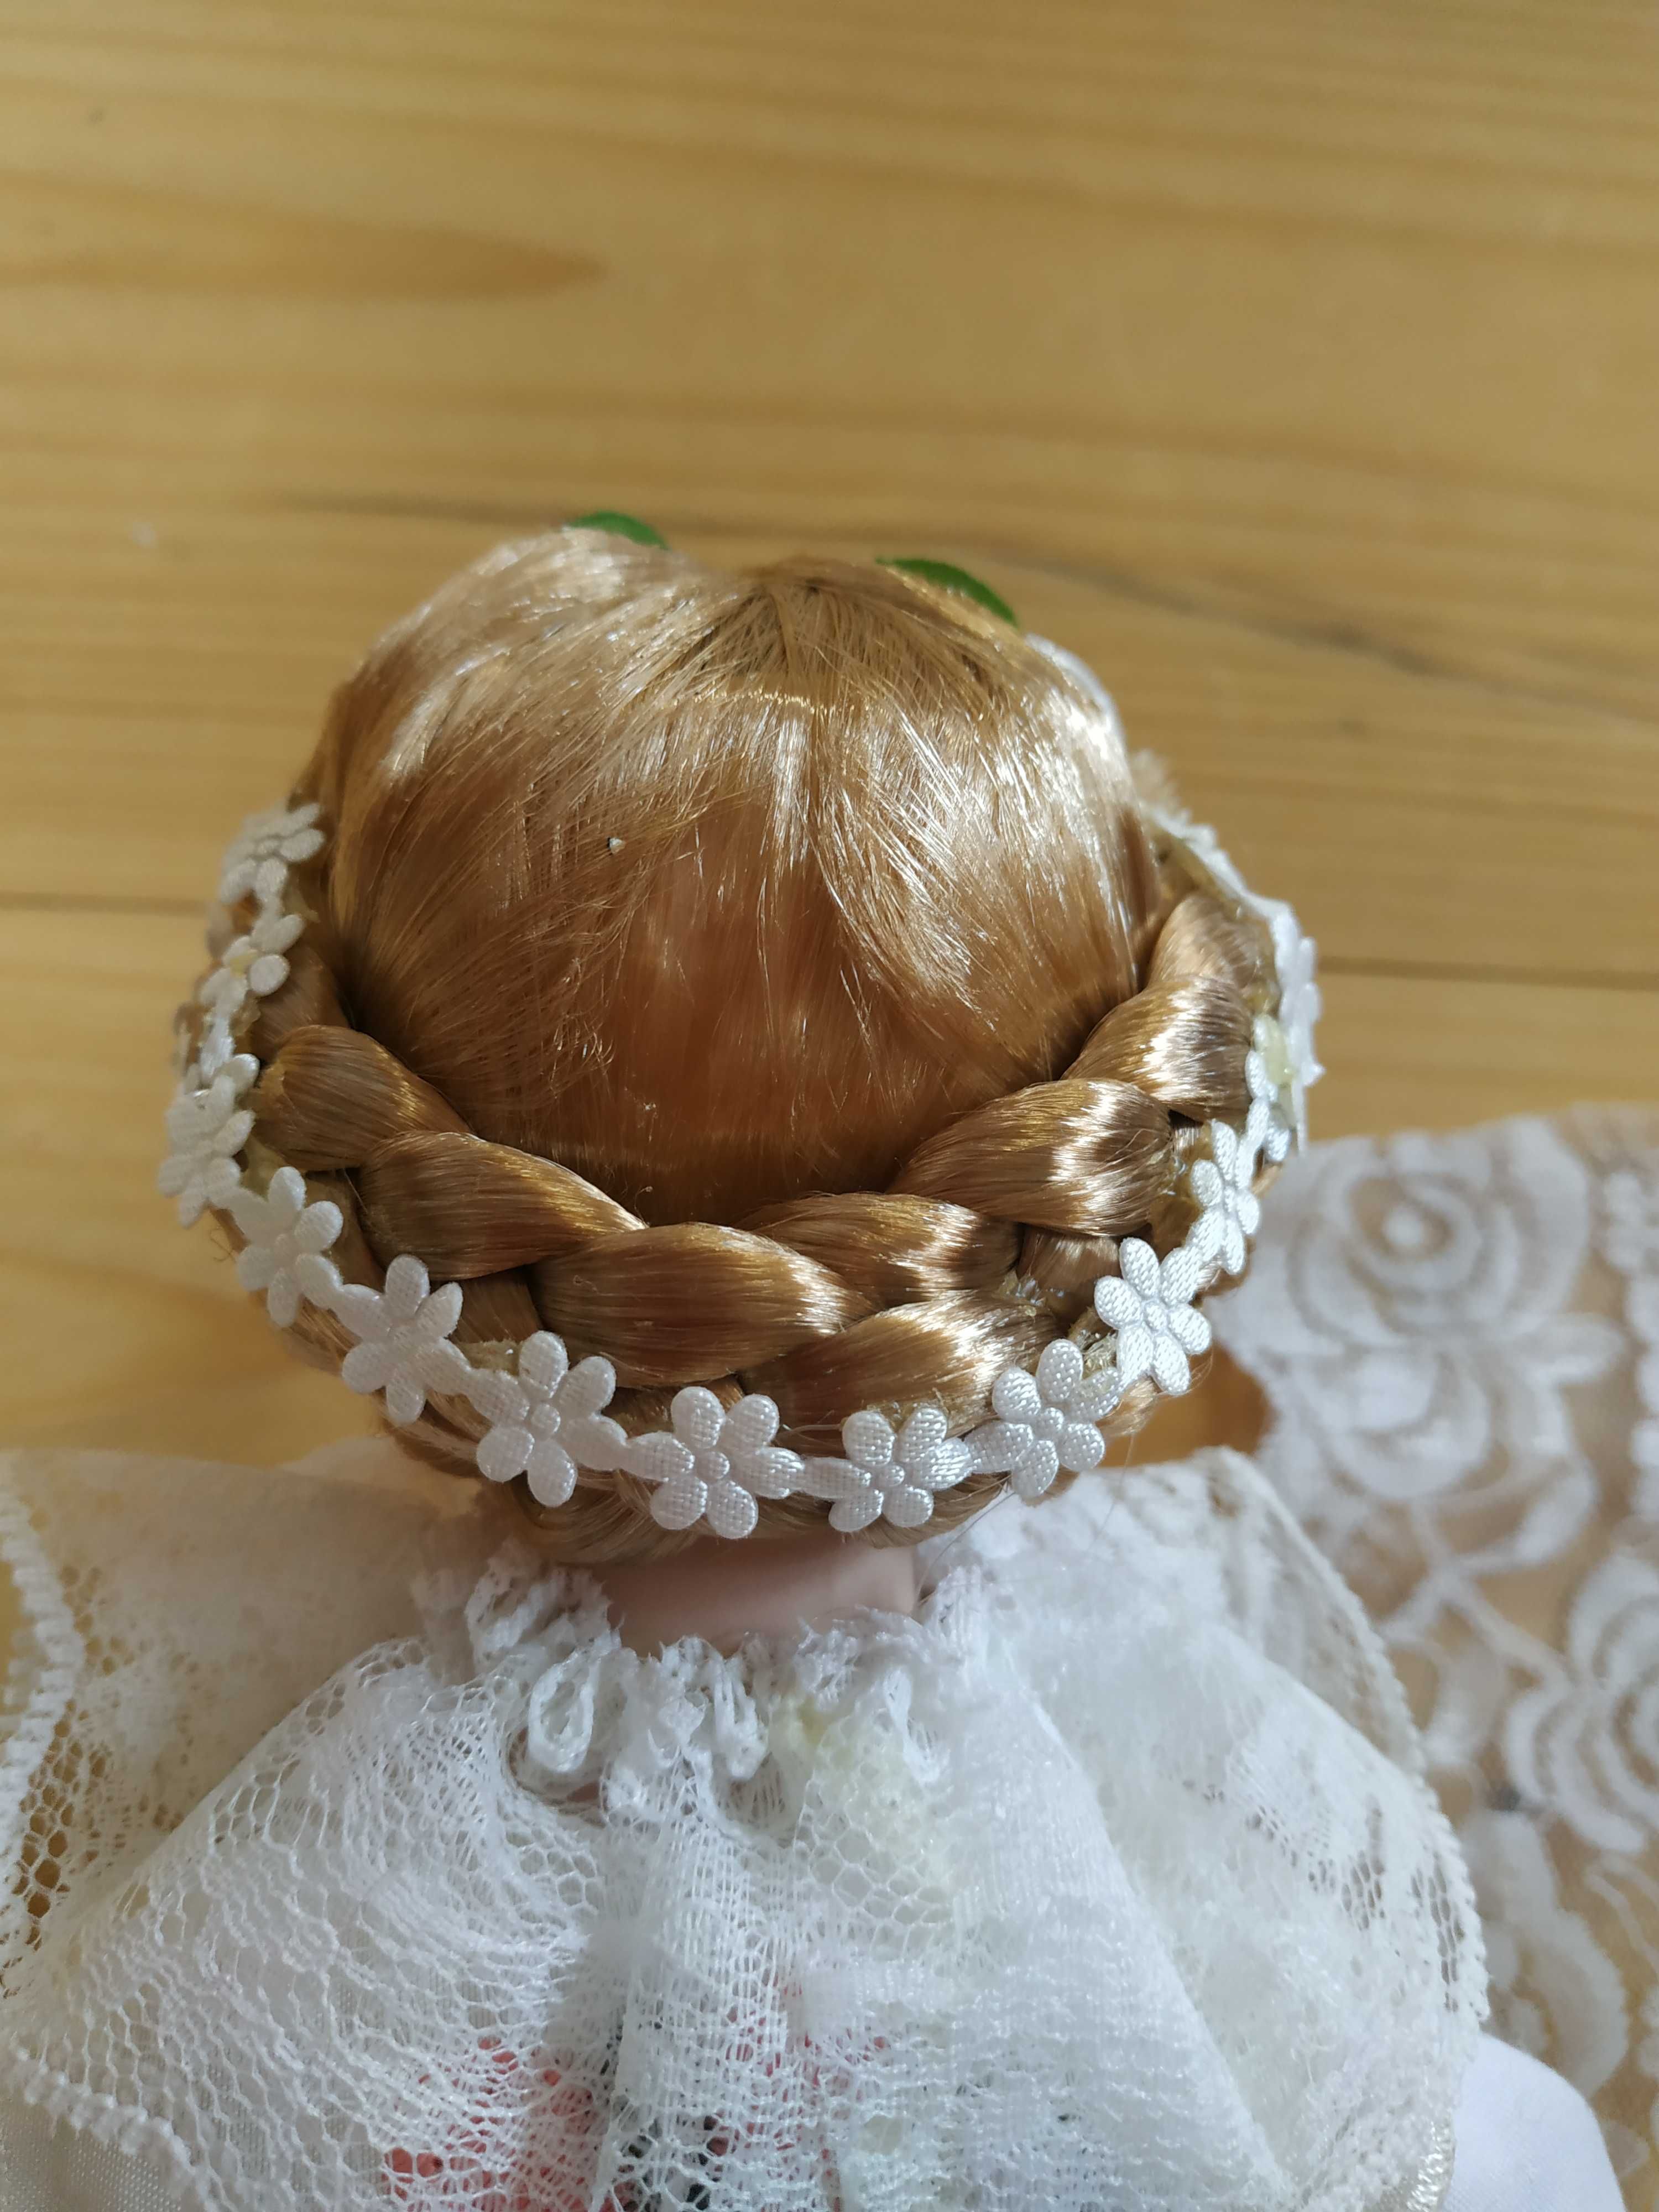 Duża porcelanowa lalka w stroju ślubnym